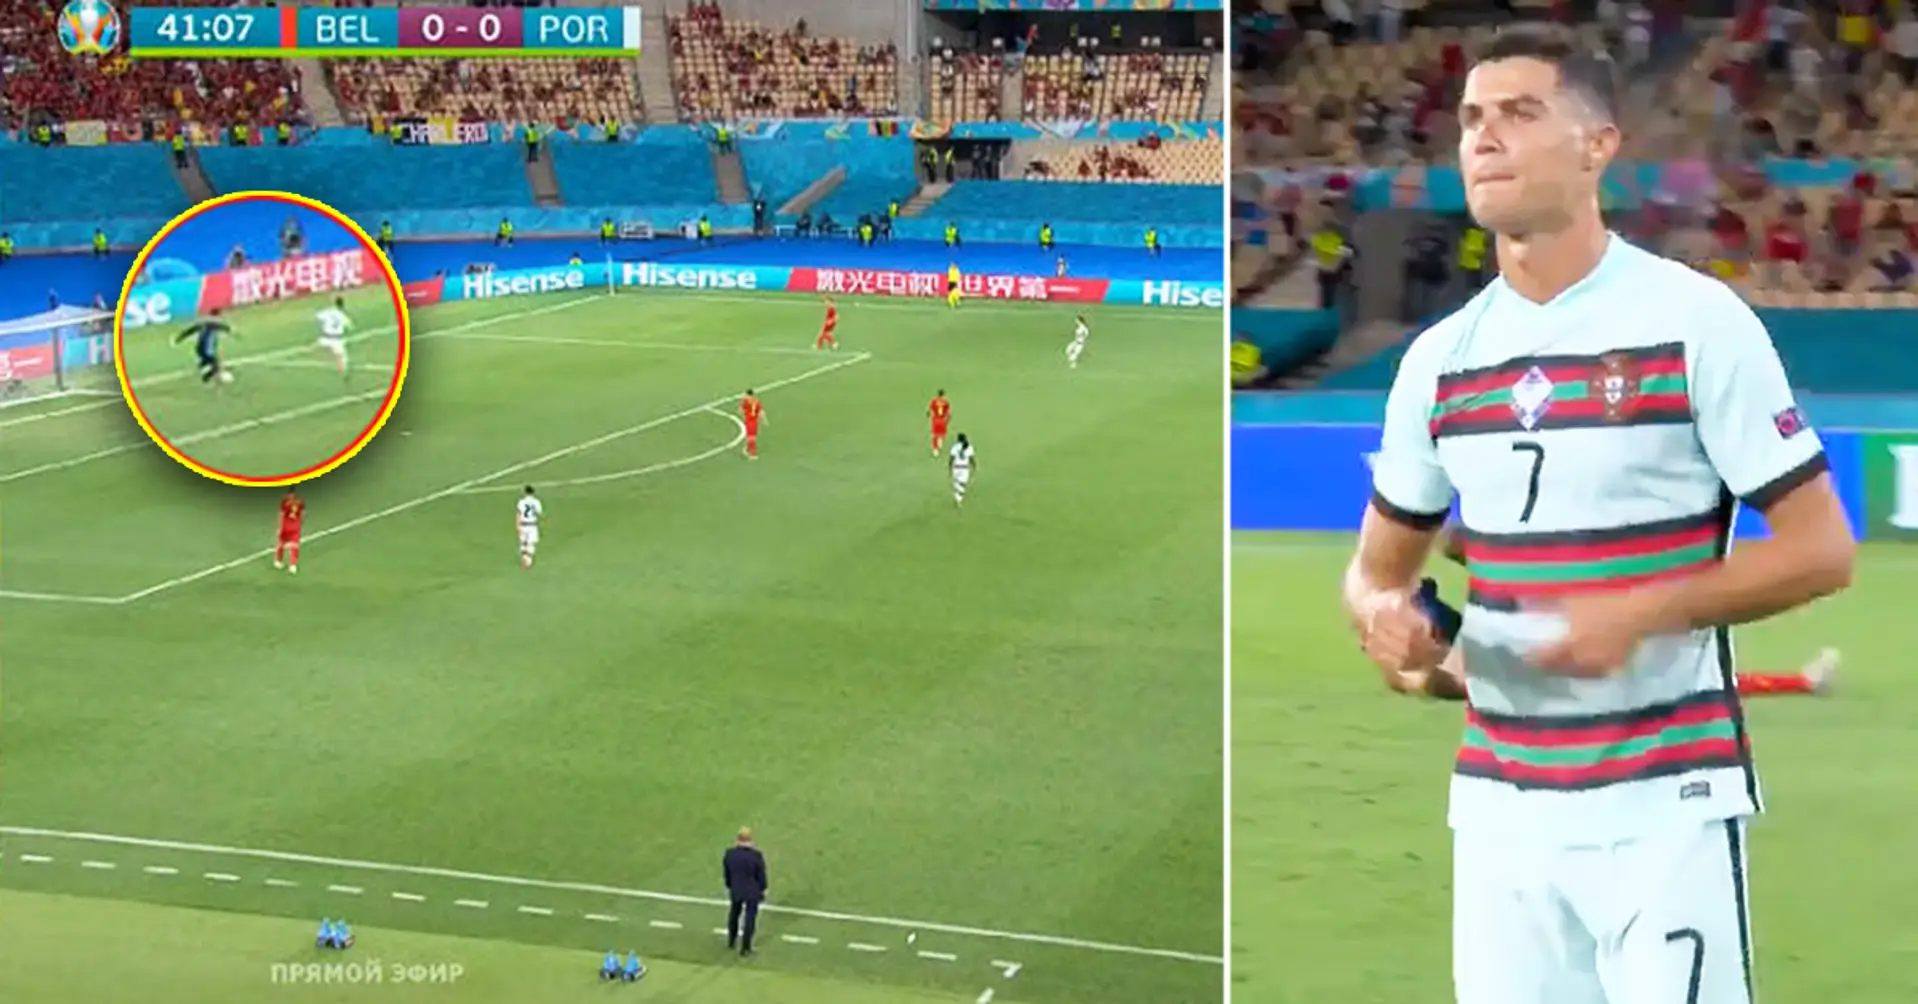 Caught on camera: Thibaut Courtois tricks Cristiano Ronaldo before Belgium goal